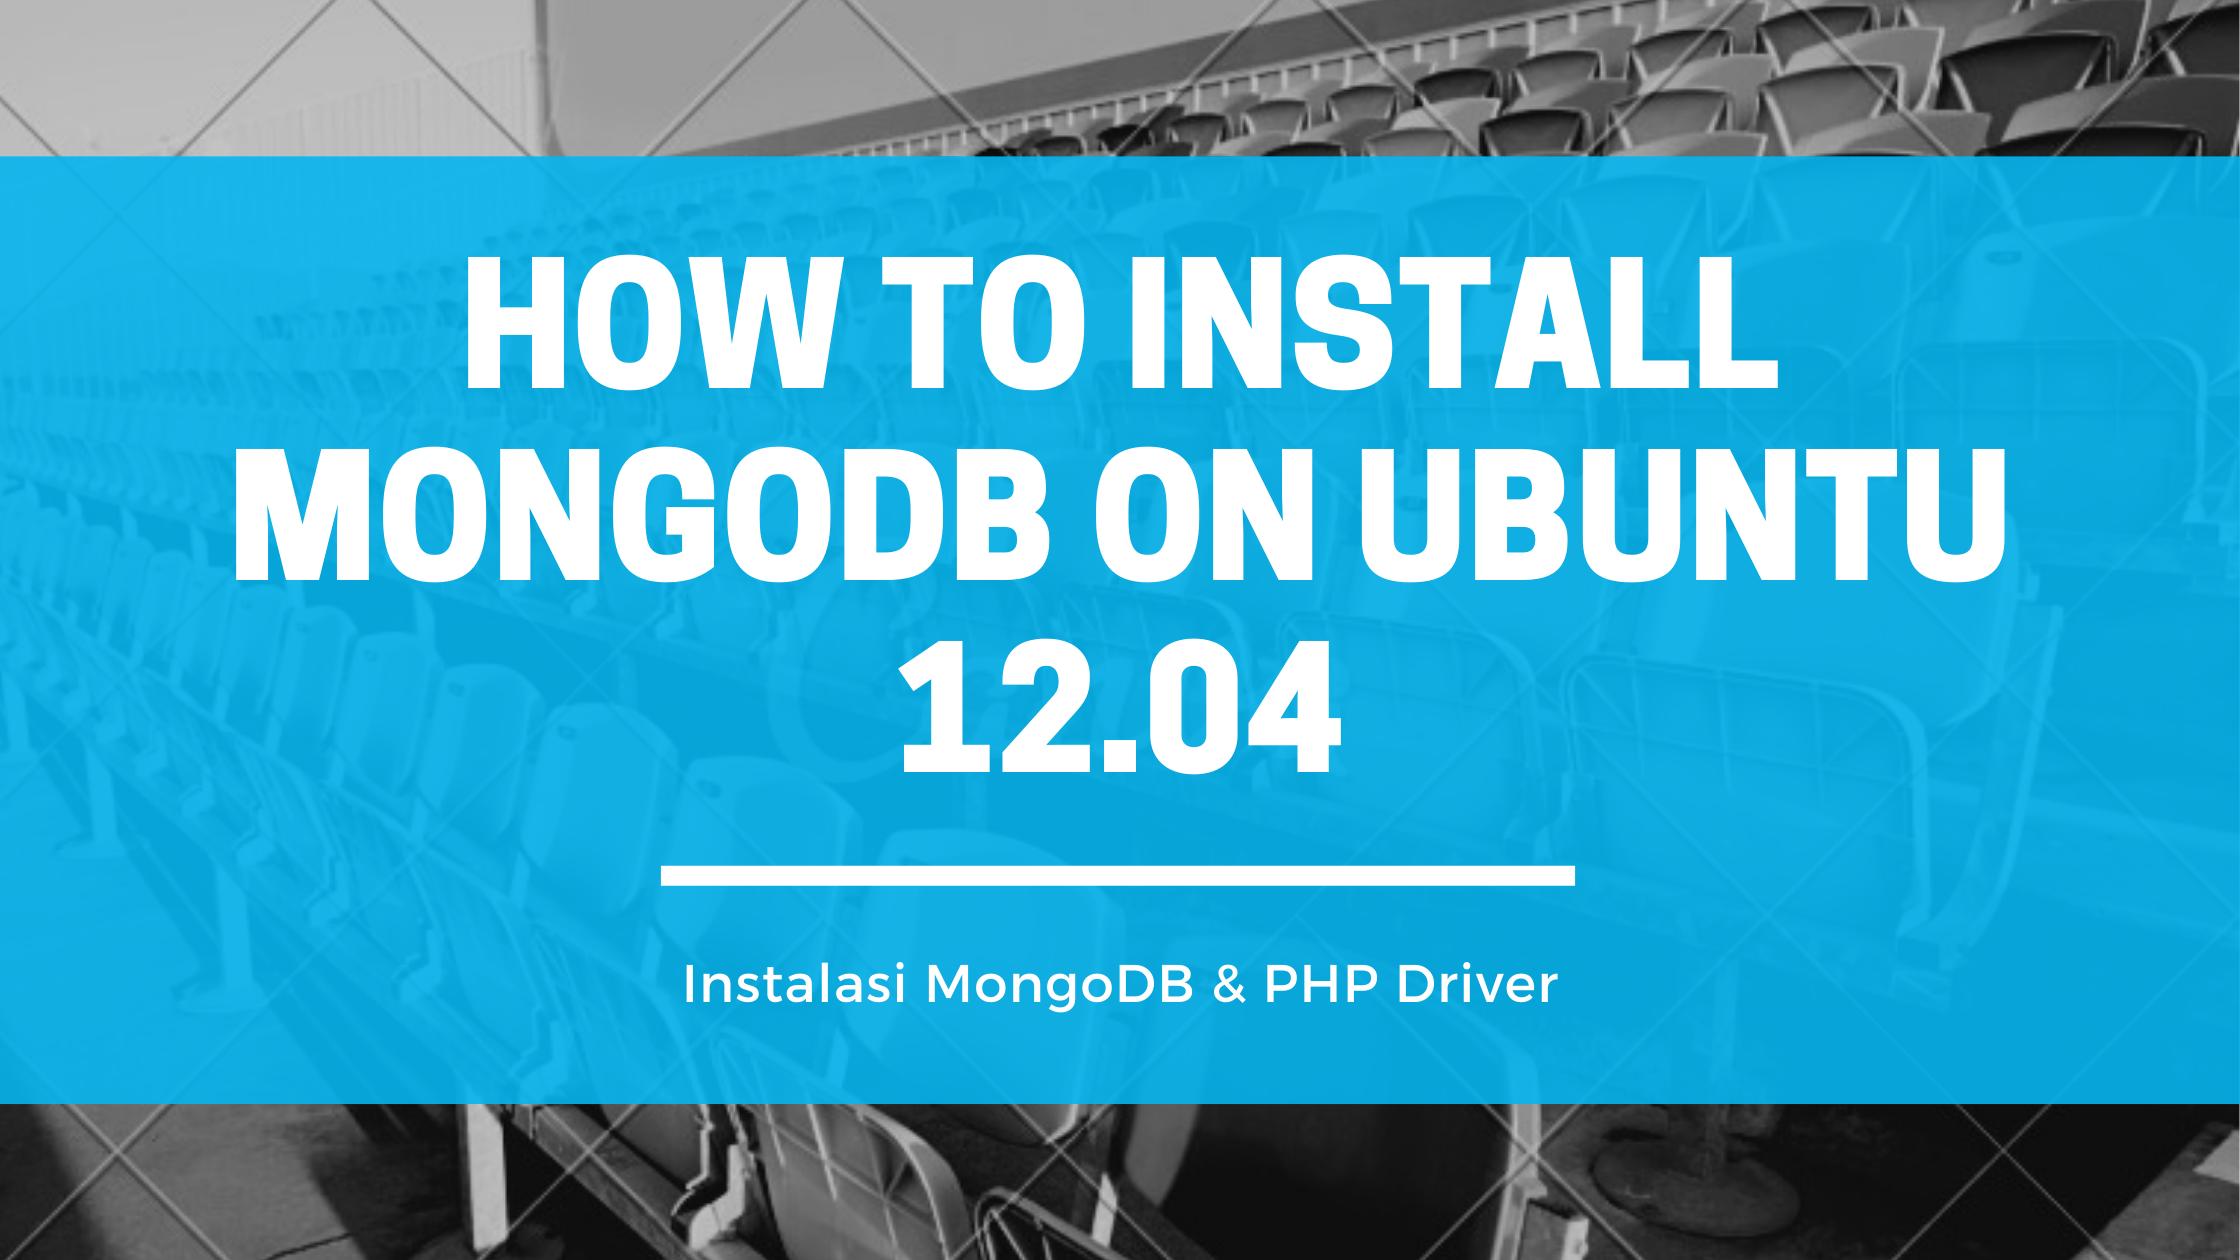 How to Install MongoDB on Ubuntu 12.04